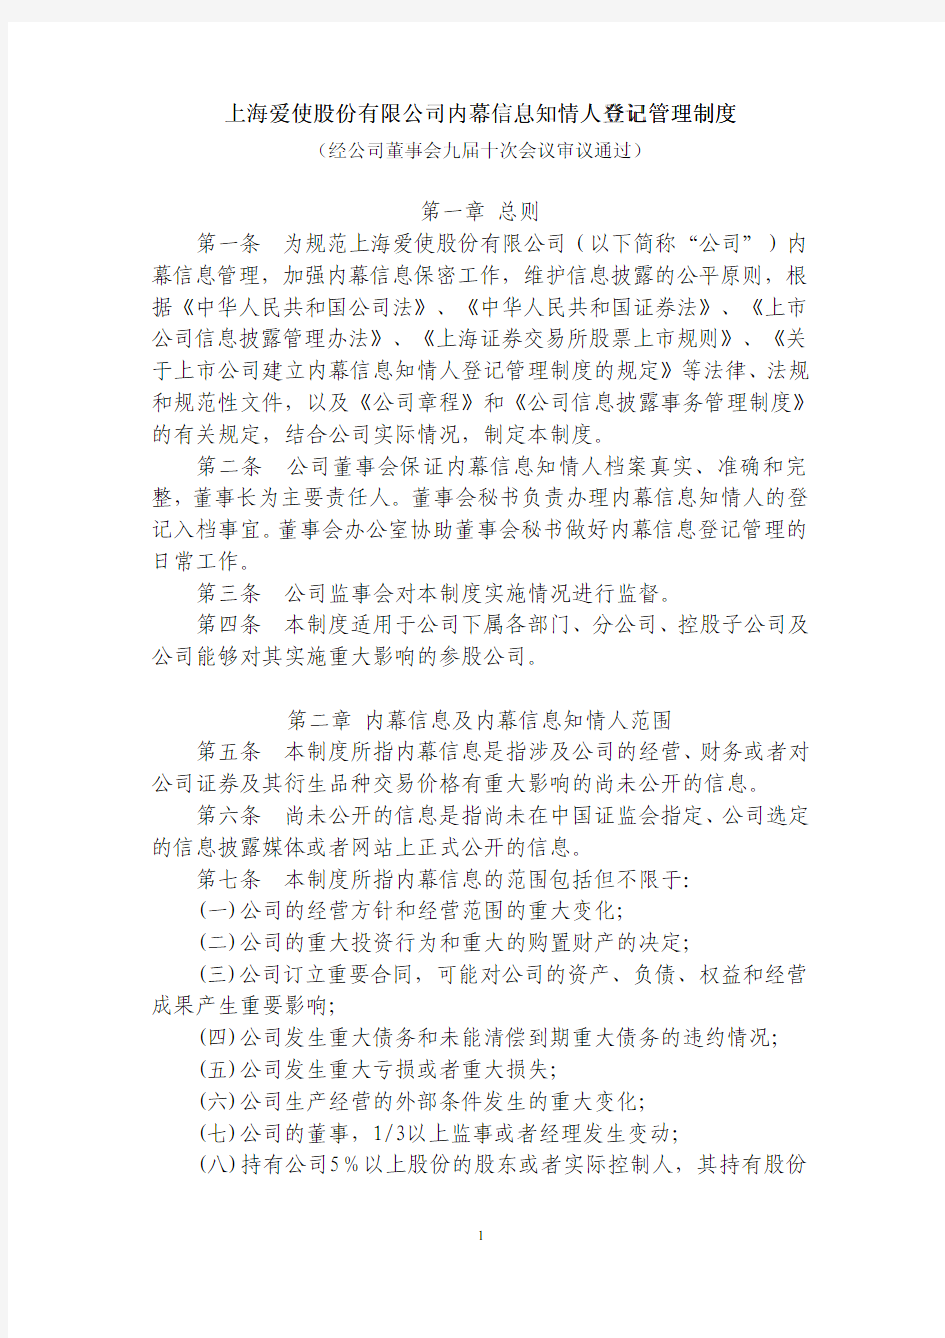 第一章 总则 第一条 为规范上海爱使股份有限公司(以下简称公司